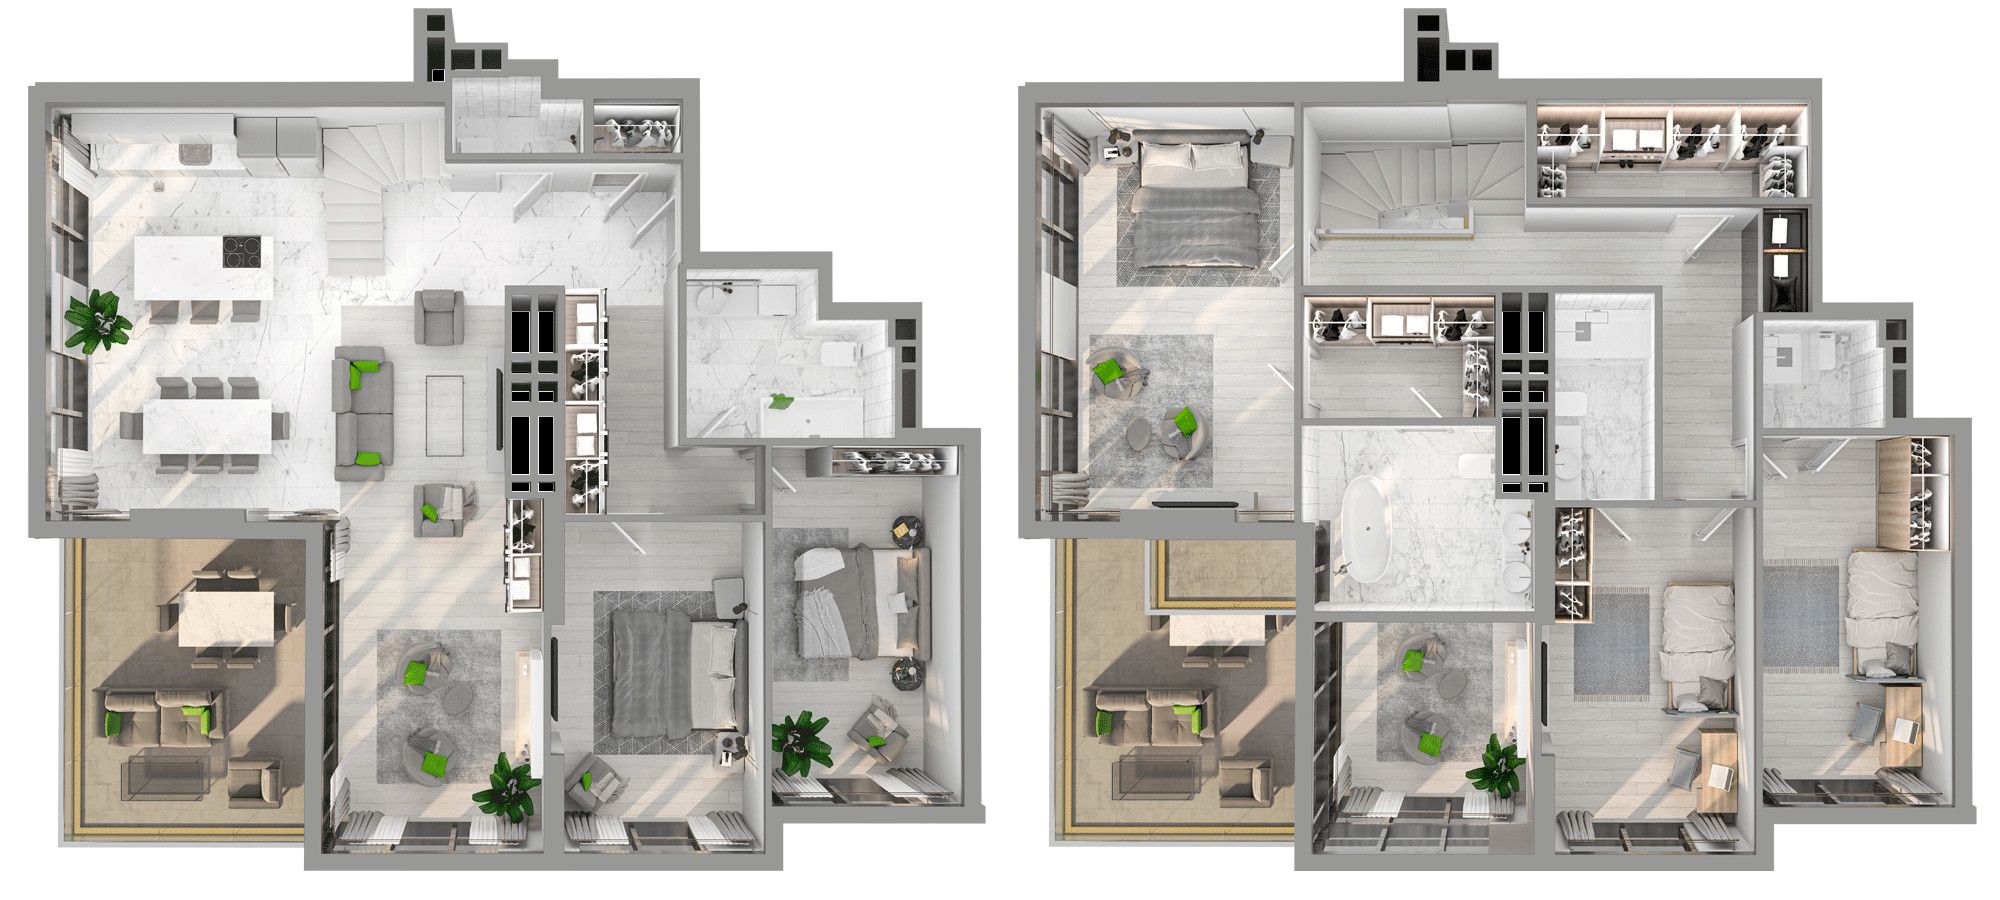 Планировка 2 уровневой квартиры 67 кв